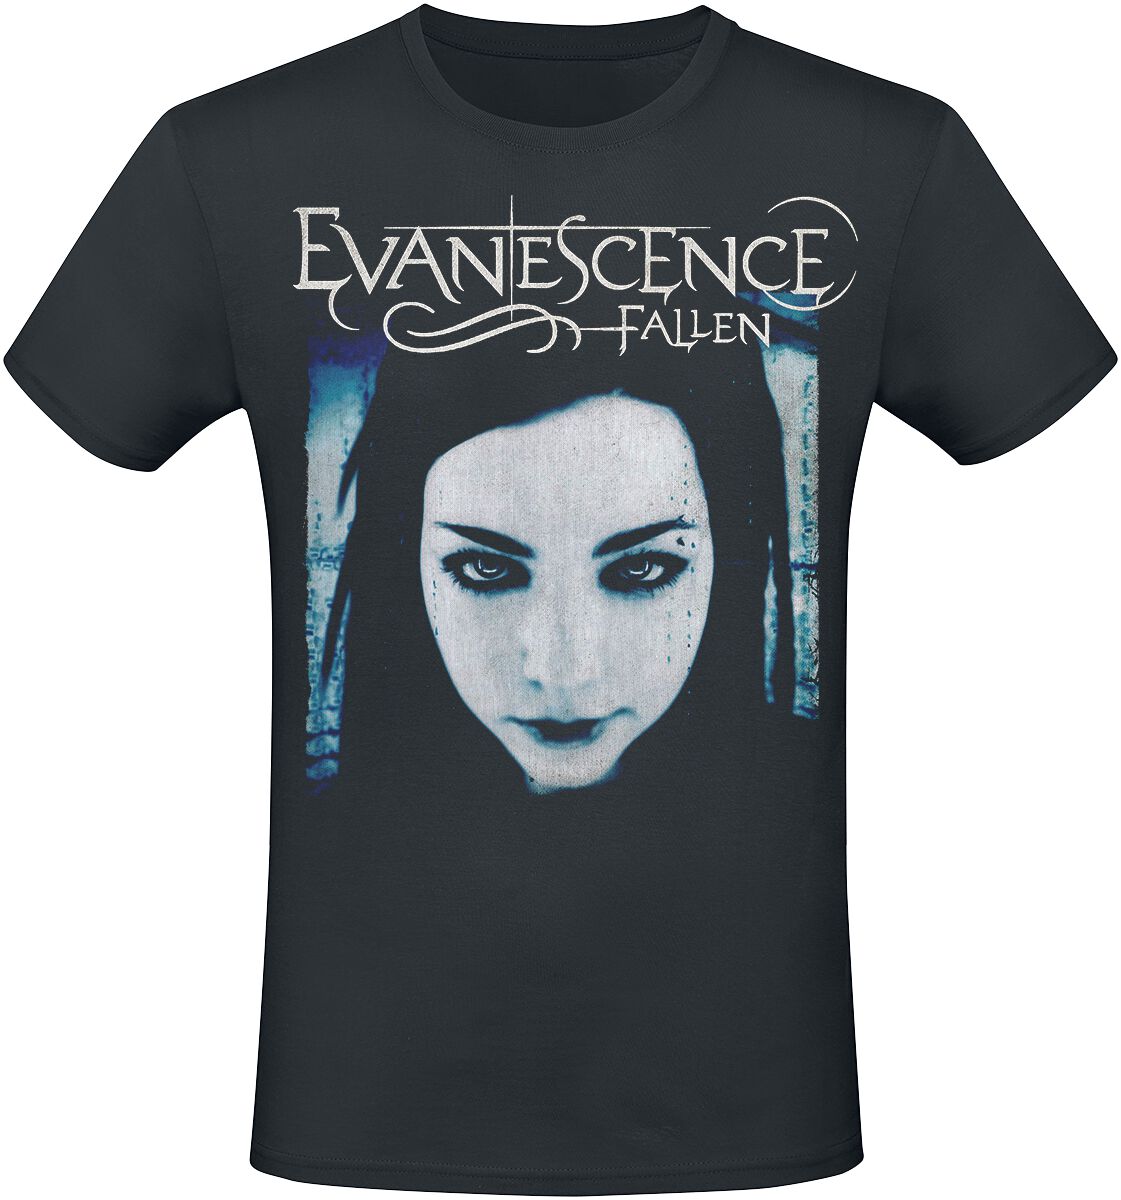 Evanescence T-Shirt - Fallen - S bis XXL - für Männer - Größe M - schwarz  - Lizenziertes Merchandise!